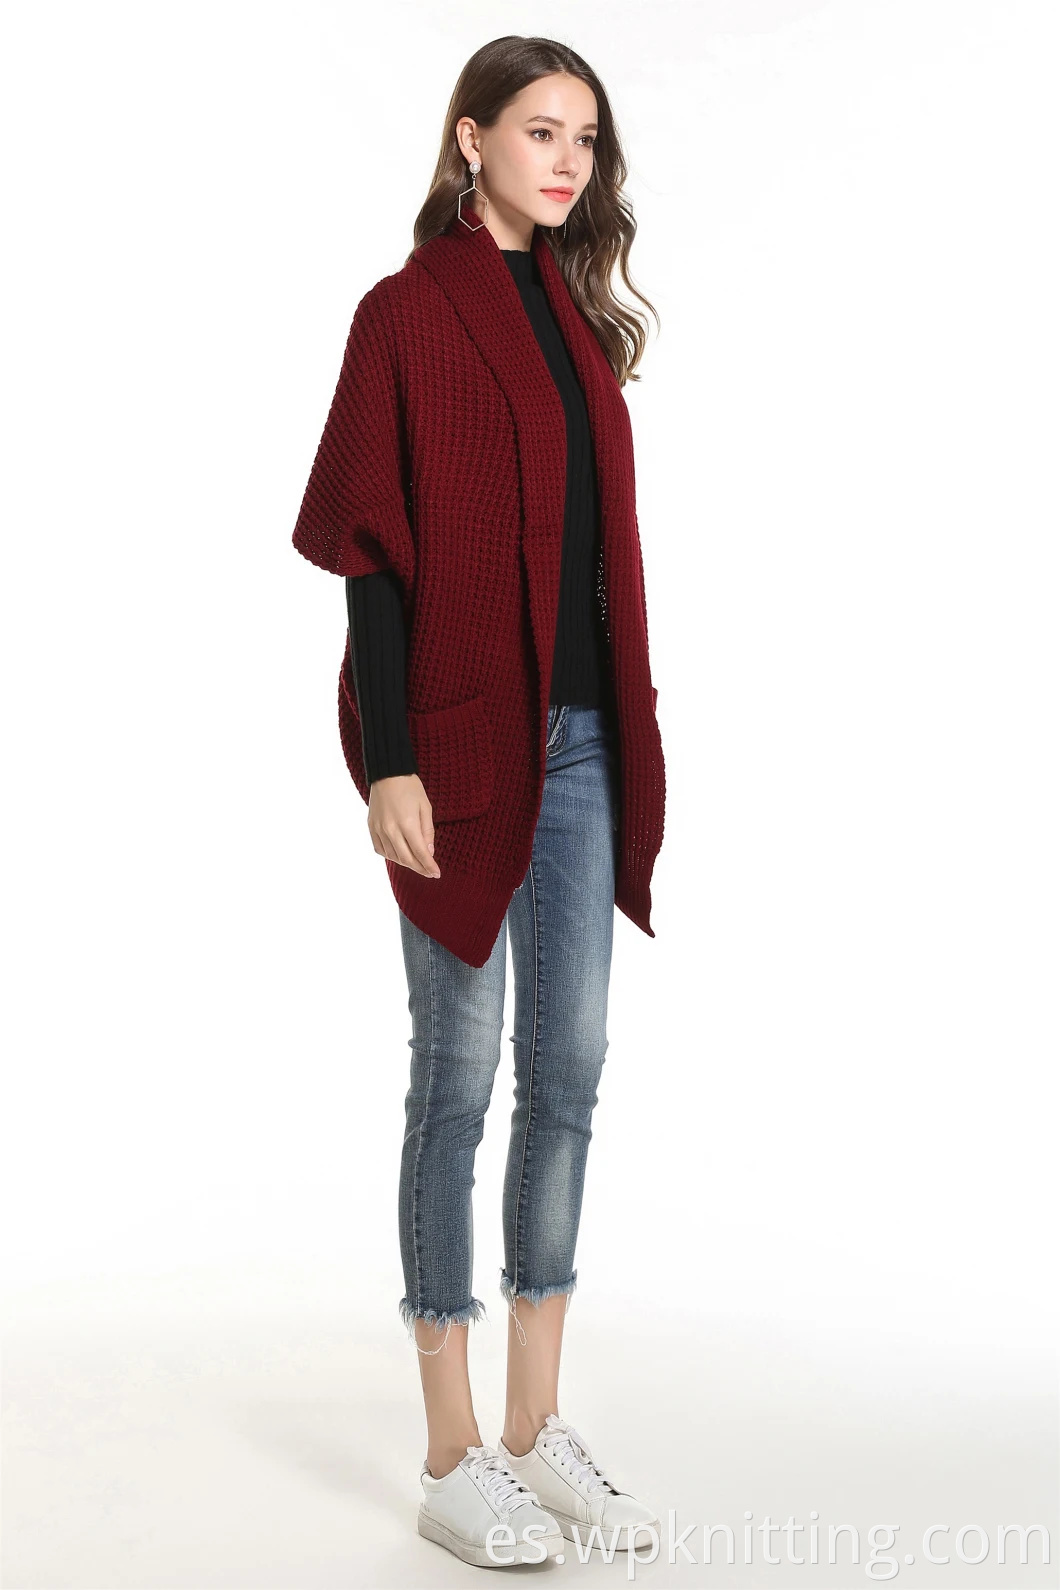 Puro color invierno knitwear cárdigan buhor mujeres suéter casual